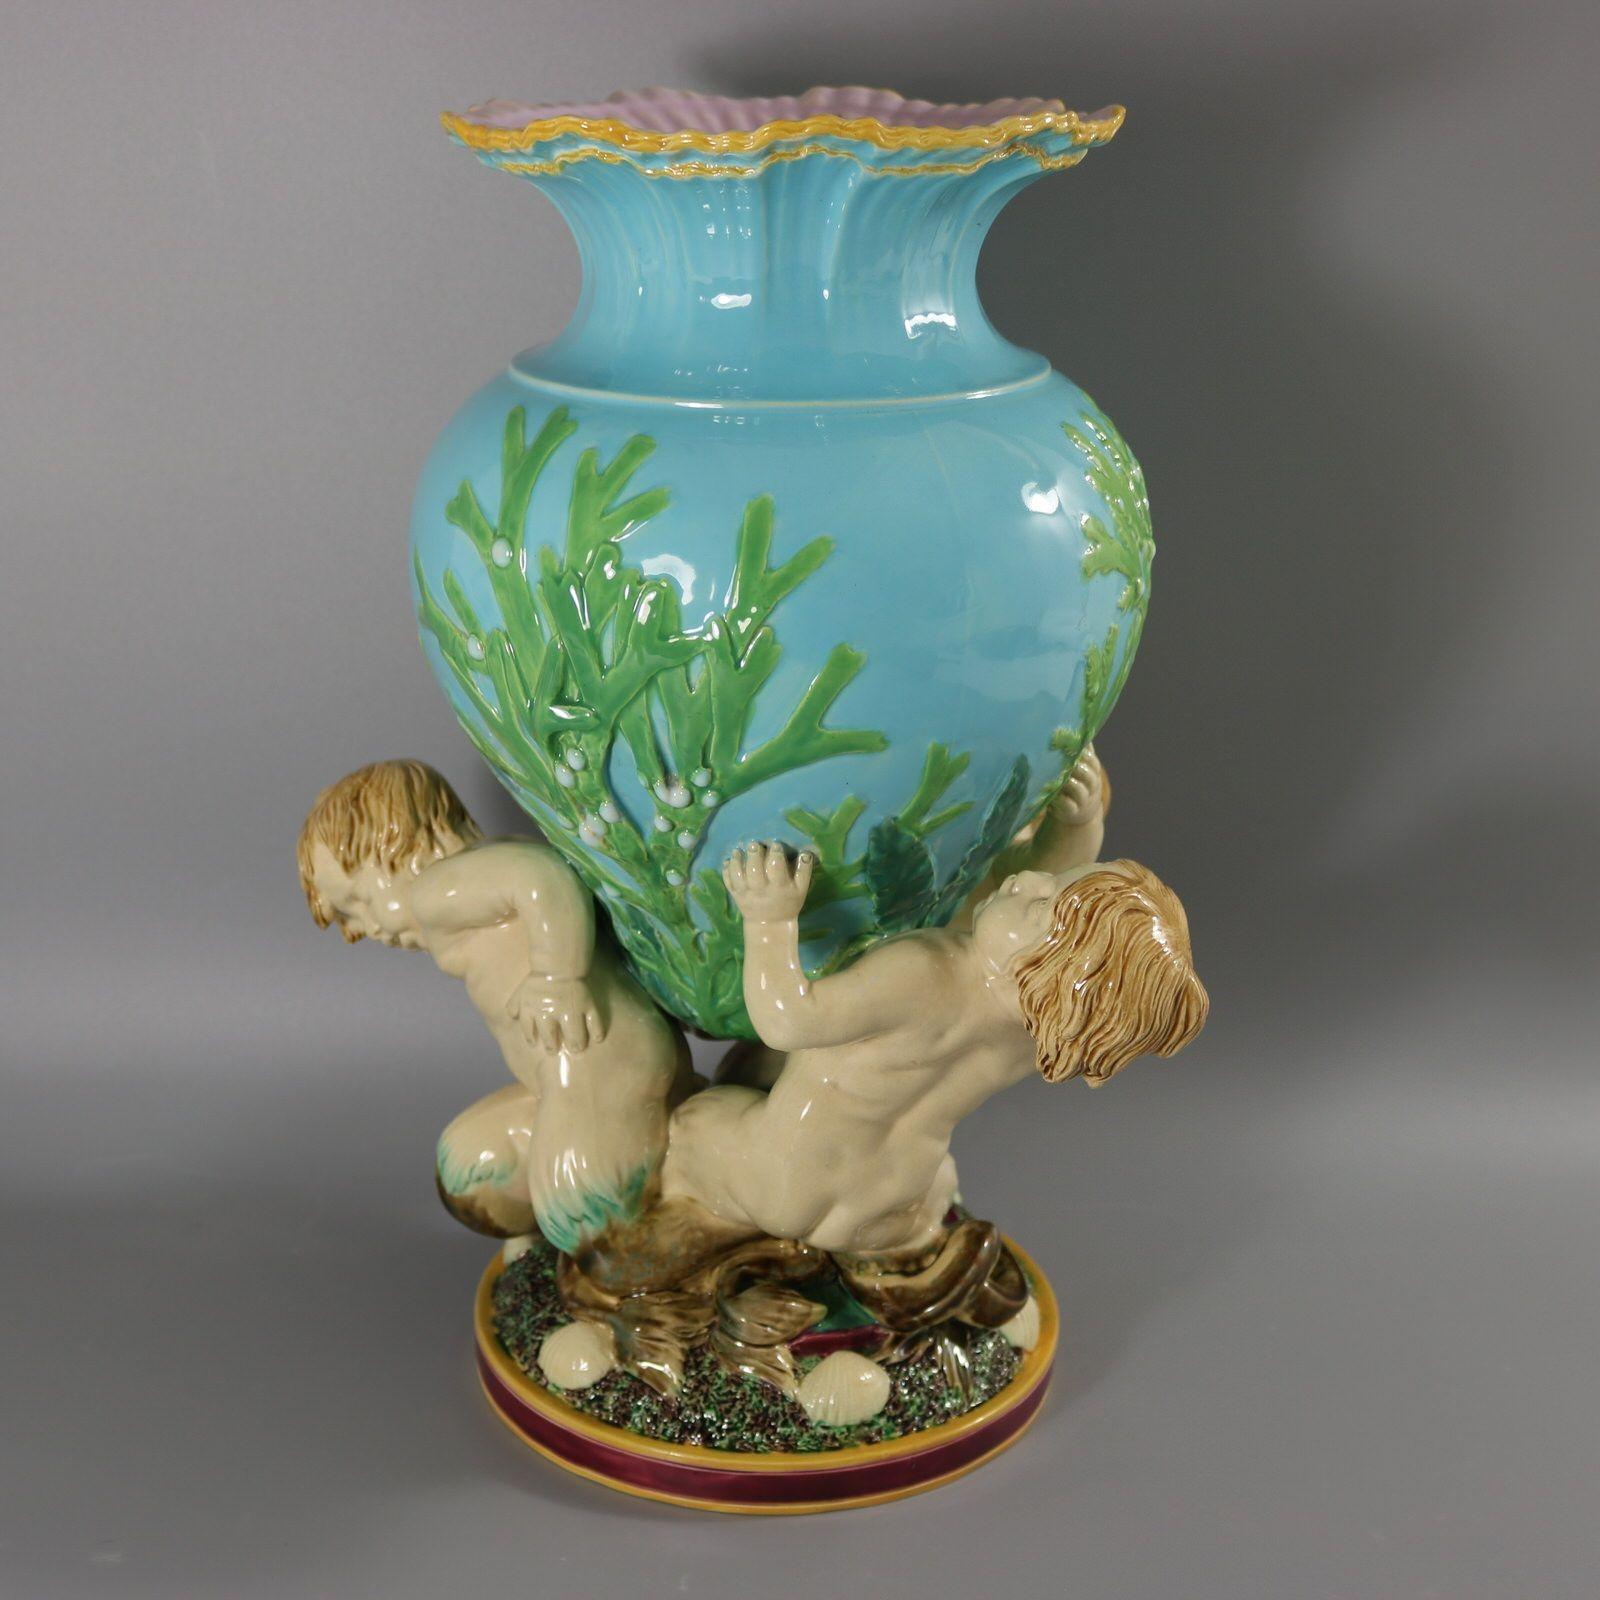 Minton-Majolika-Vase mit drei Seefahrern, die ein mit Algen geschmücktes Gefäß tragen. Der Rand der Vase ist so modelliert, dass er brechende Wellen darstellt. Türkis geschliffene Version. Färbung: Türkis, grün, cremefarben, sind vorherrschend. Das